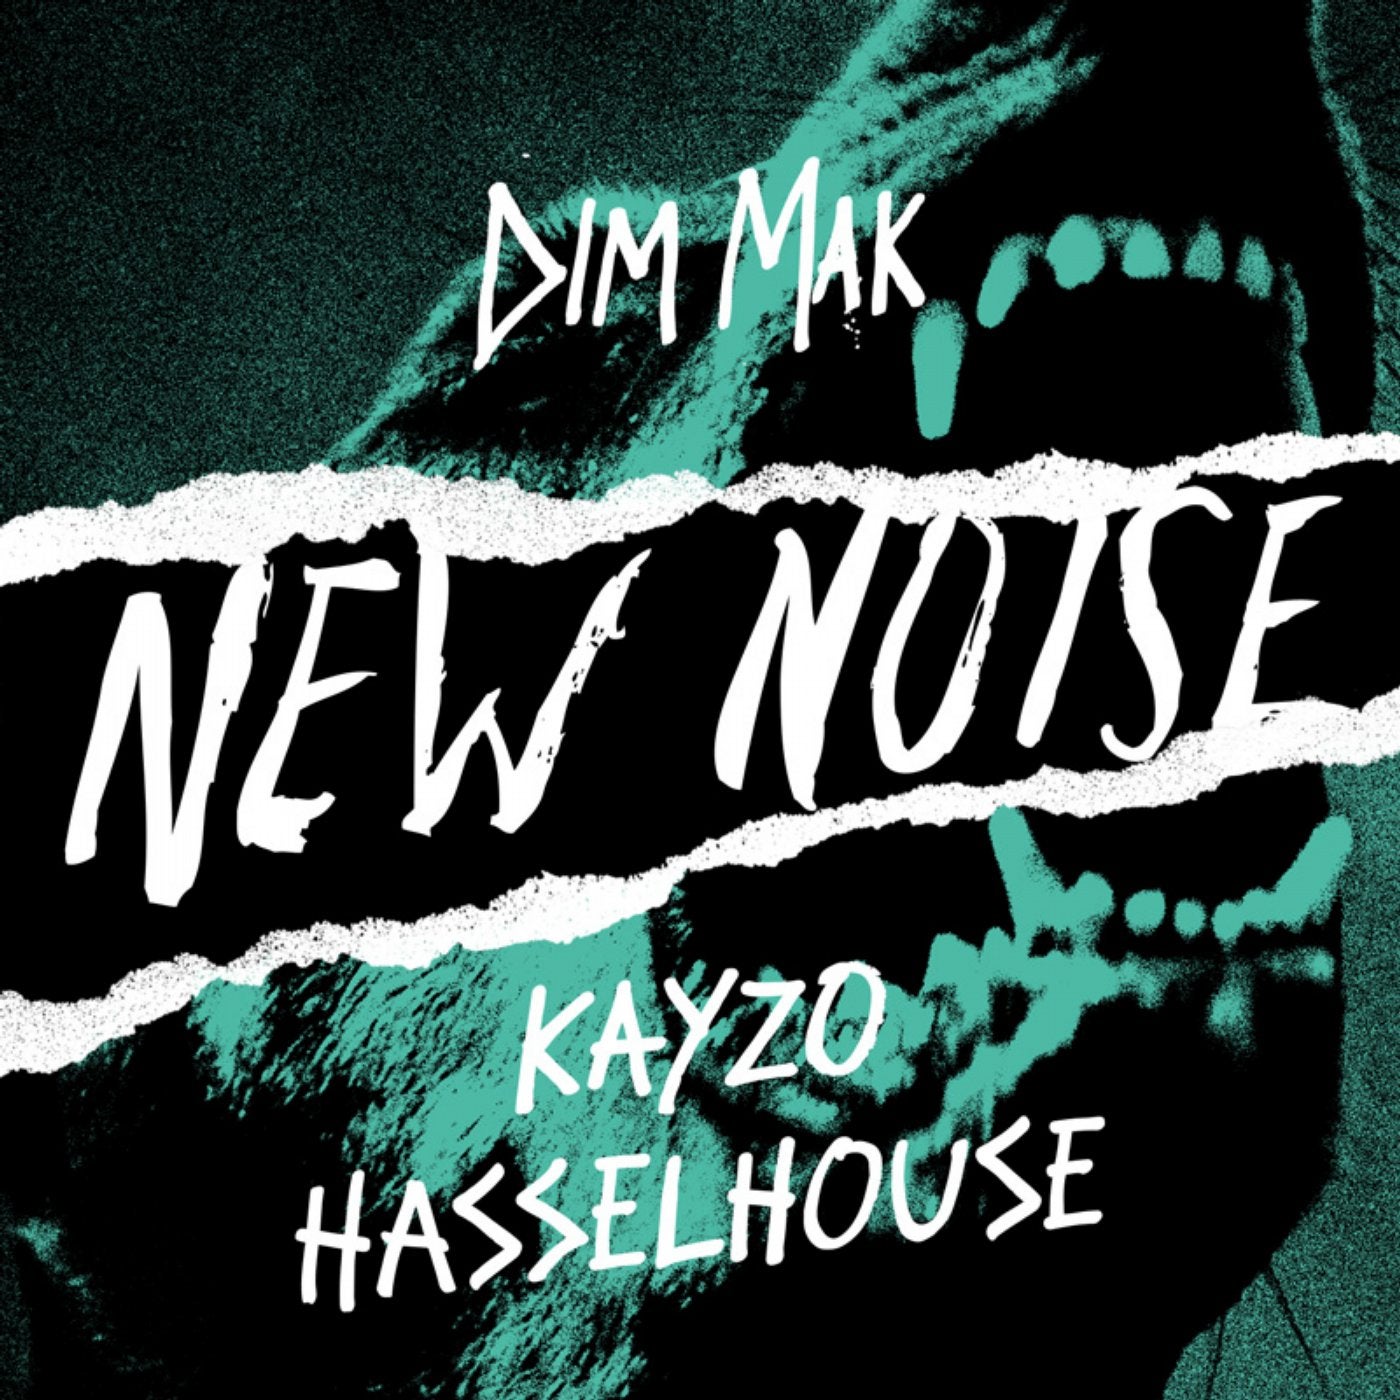 KAYZO - Hasselhouse